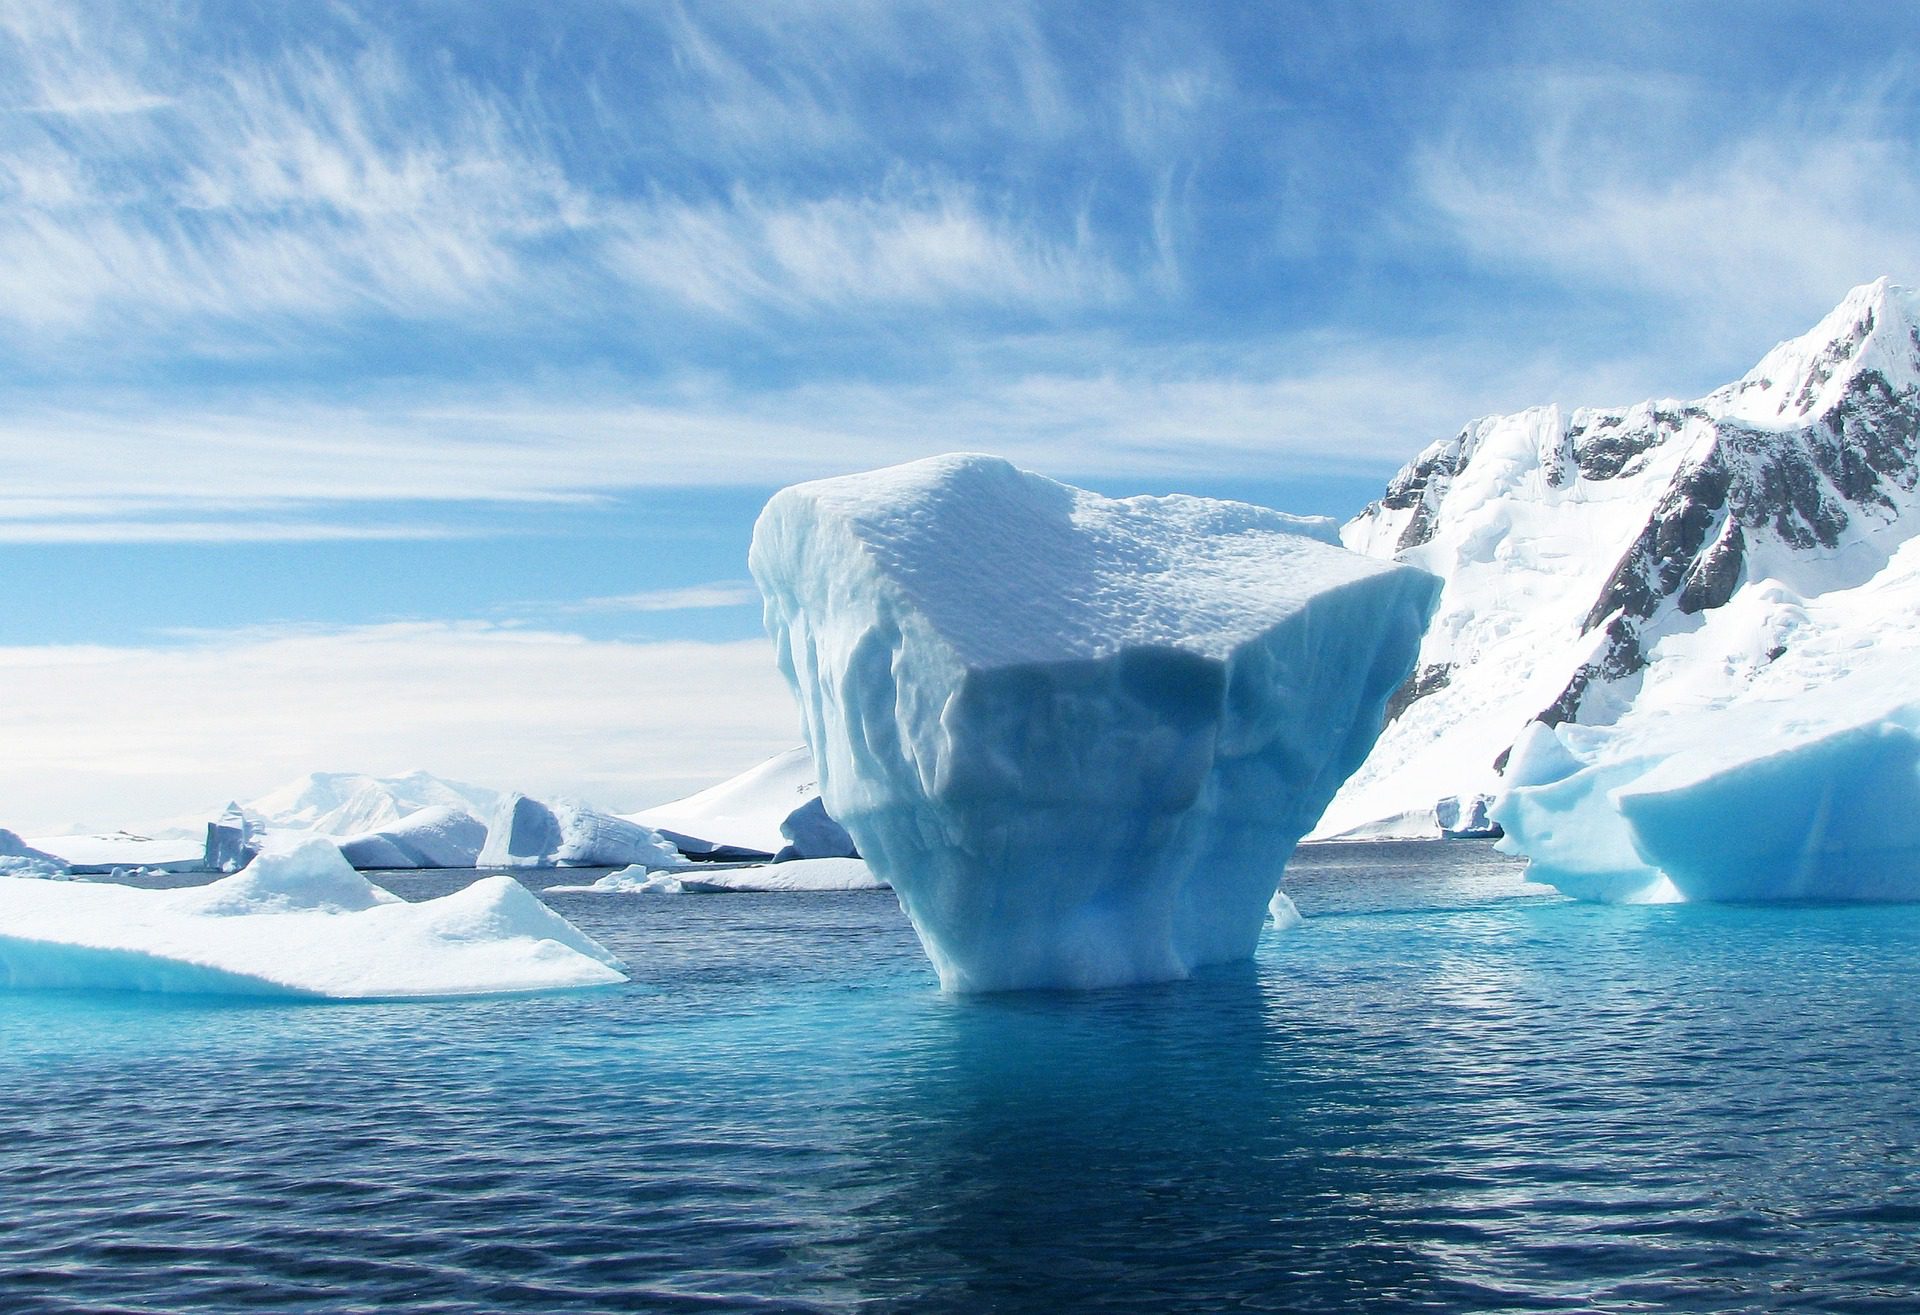 Opter pour une croisière pour découvrir l’Antarctique